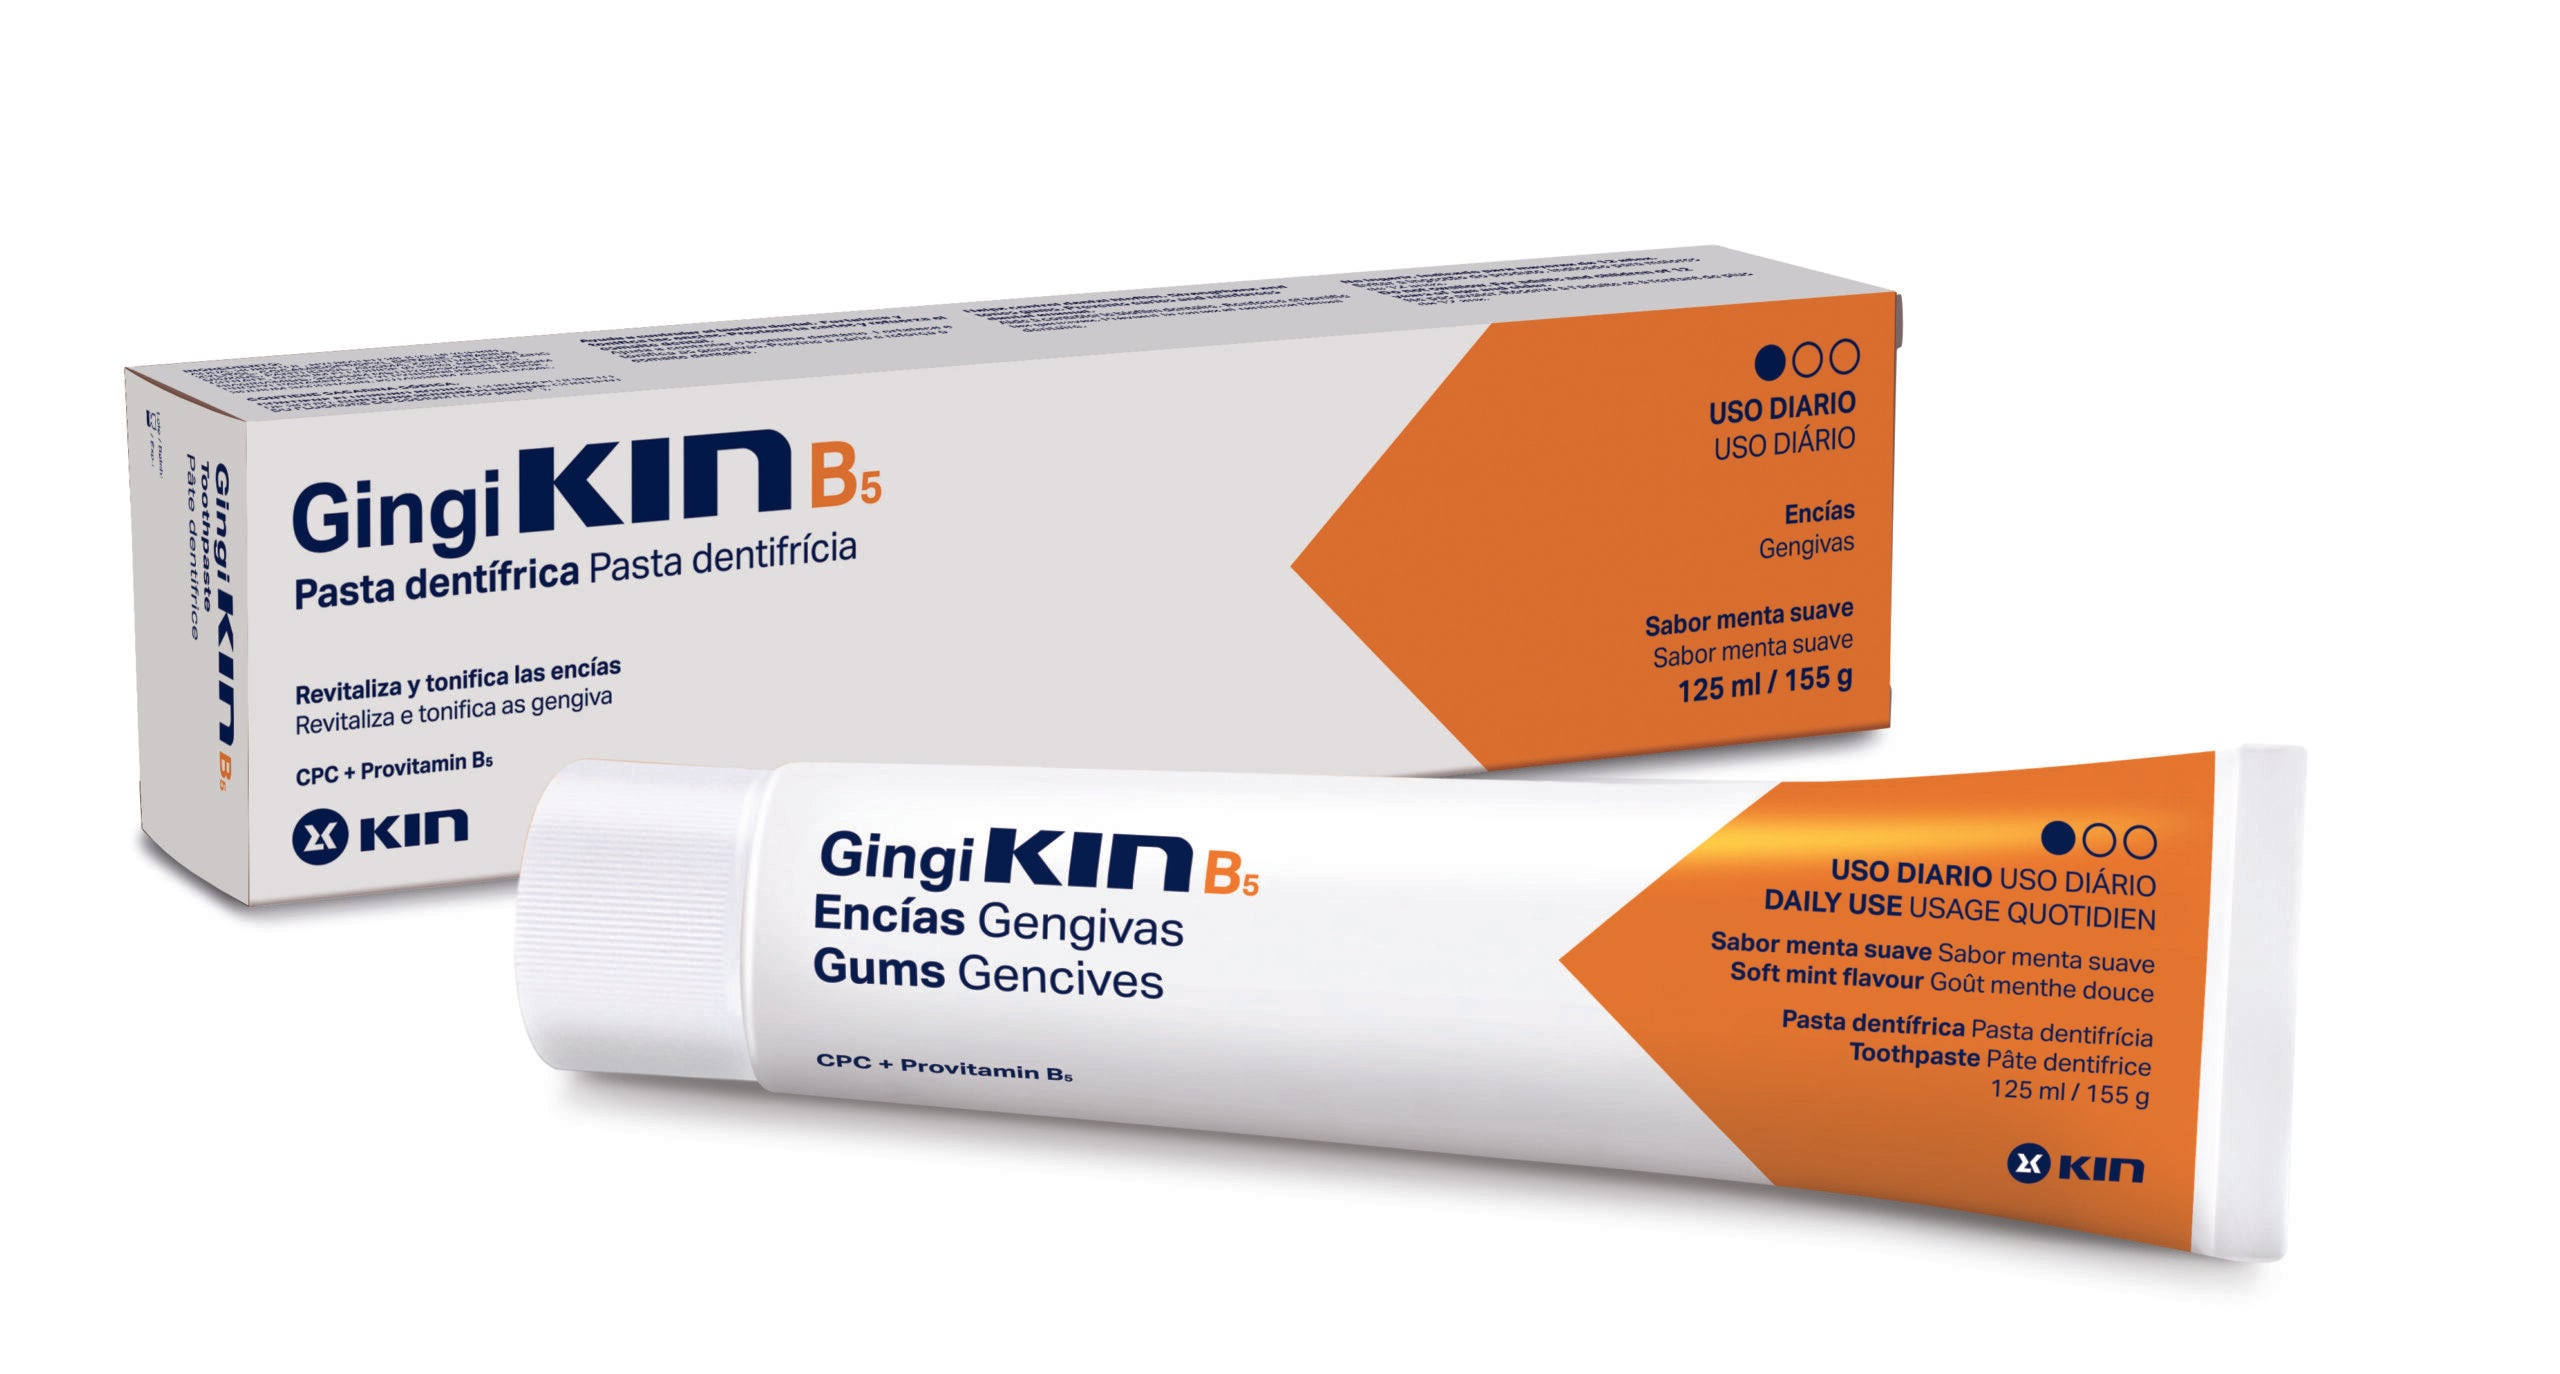 Kin B5 Toothpaste - 125ml